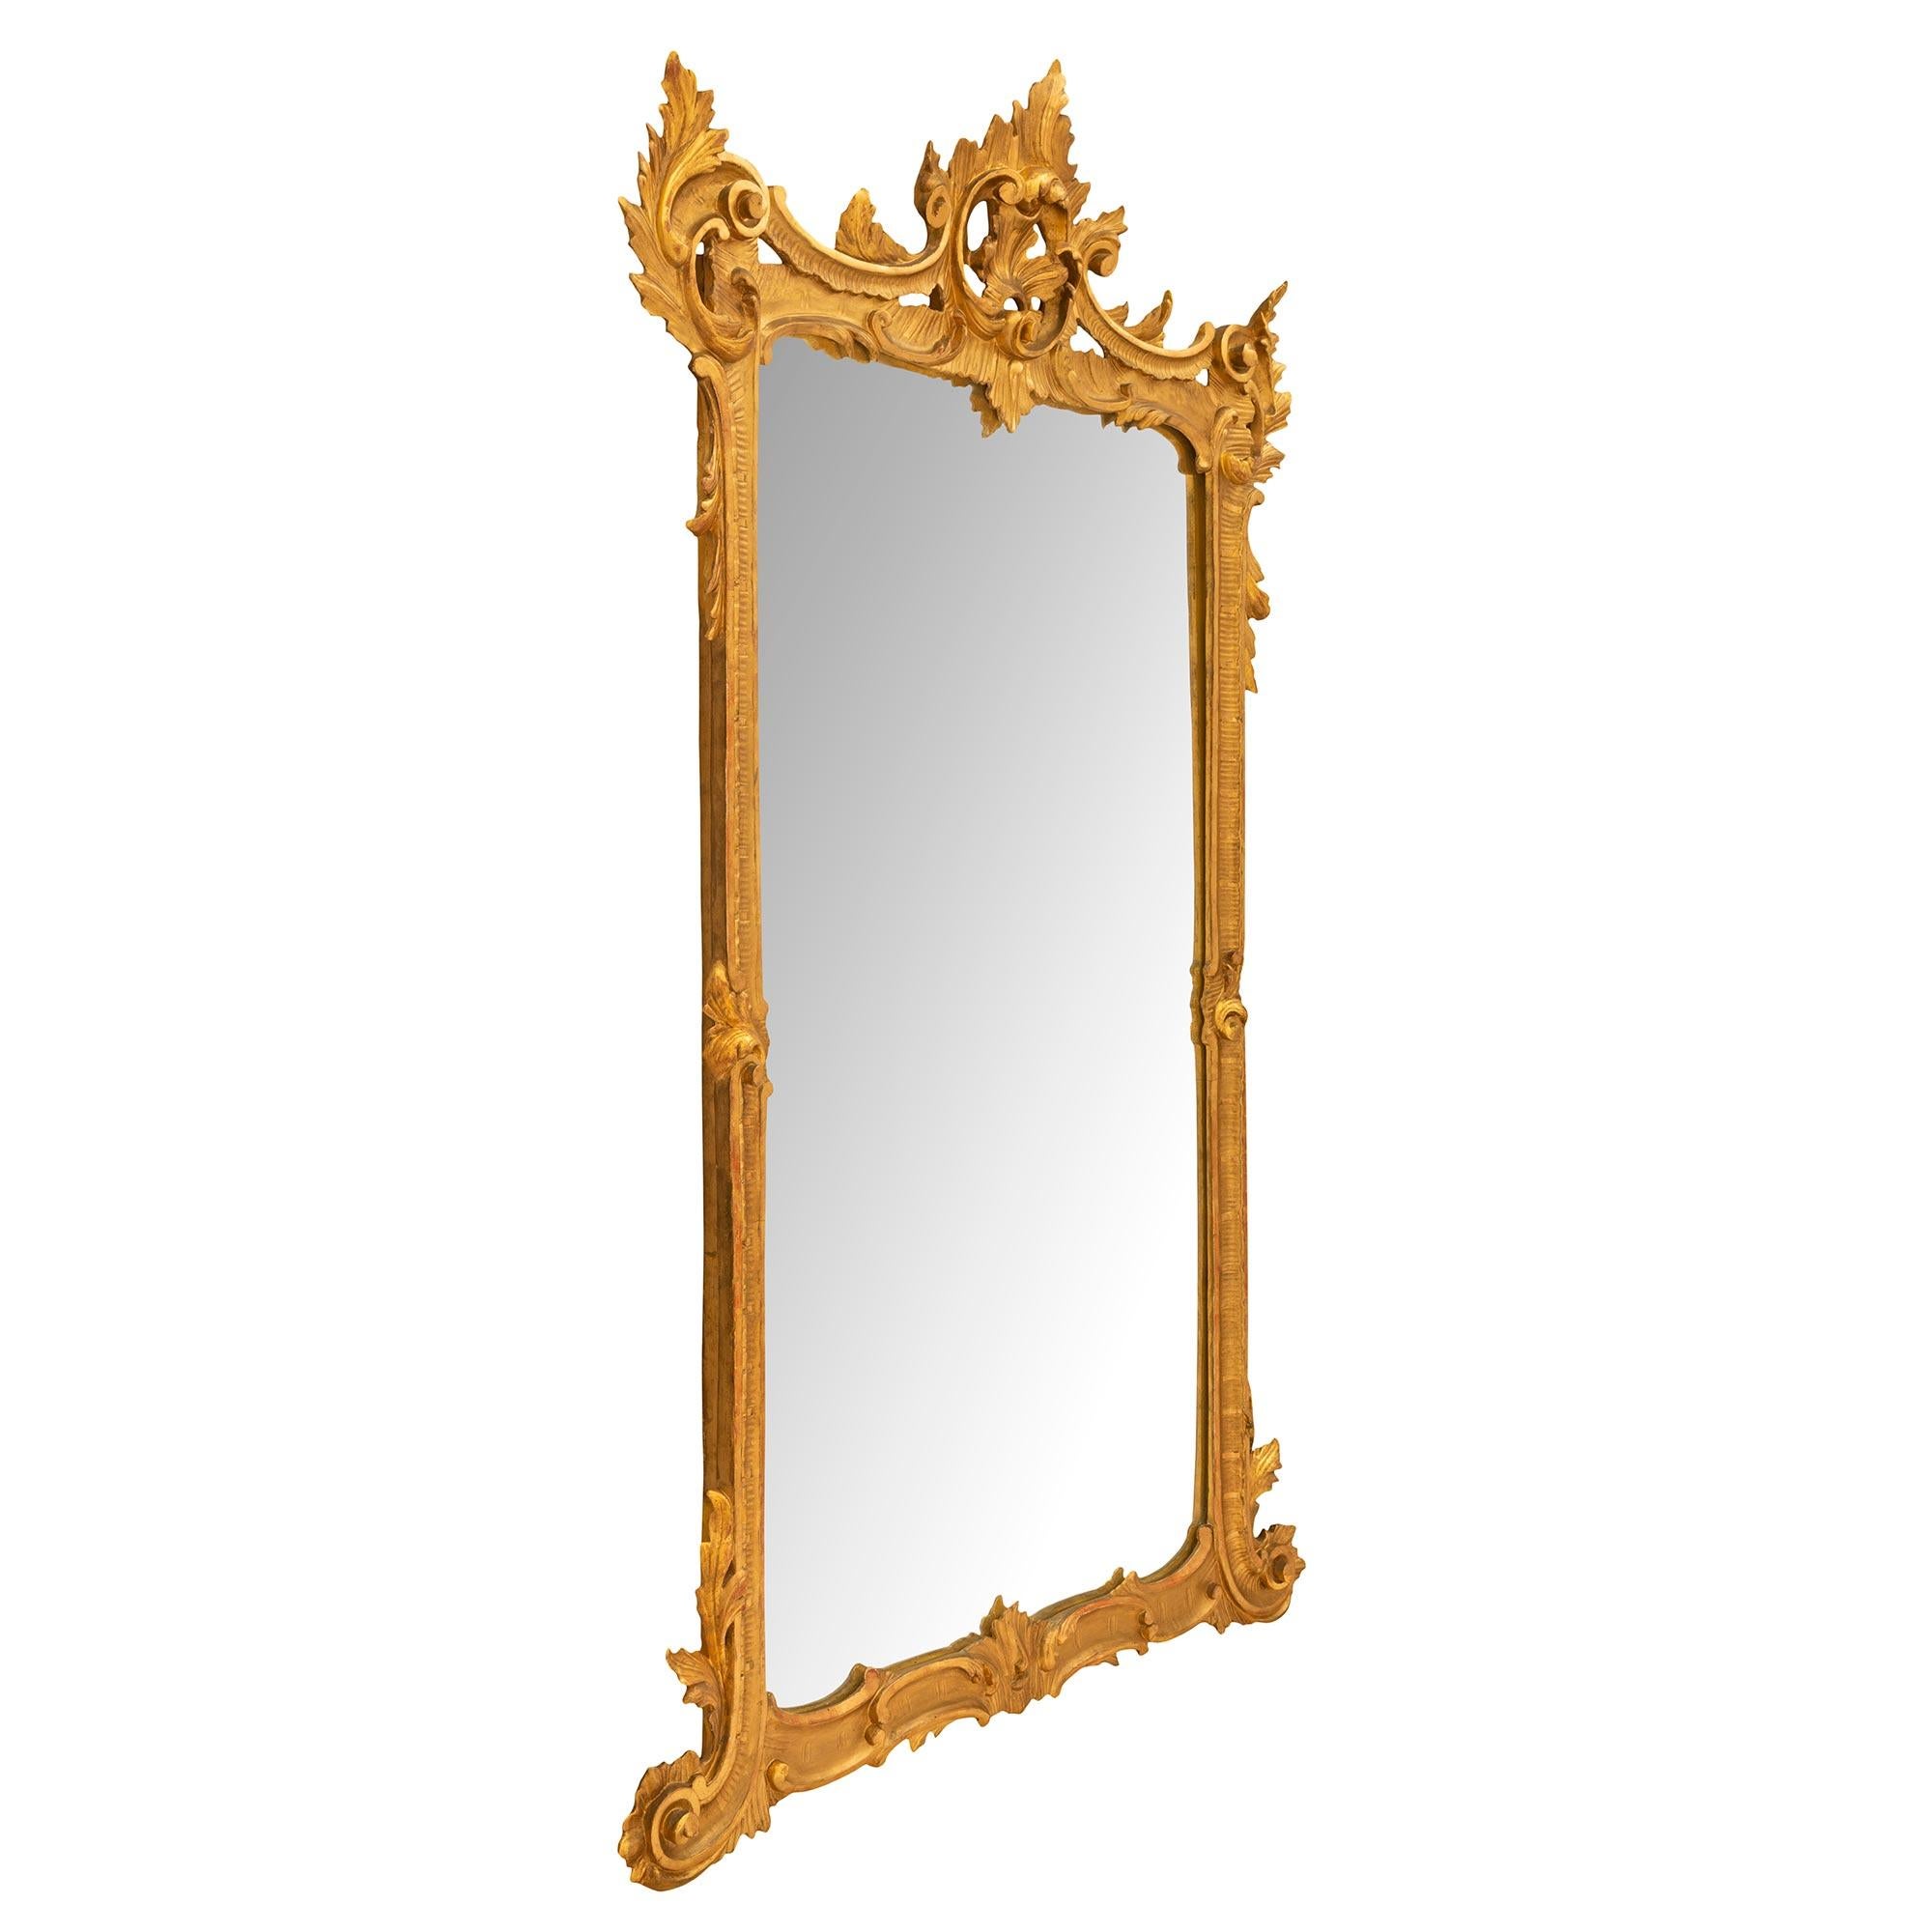 Eine wunderbare italienische 19. Jahrhundert Louis XV st. Vergoldung Spiegel. Die originale Spiegelplatte ist von einer auffälligen und einzigartig geformten vergoldeten Schilfrohrleiste mit eleganten C-förmigen Bewegungen umrahmt. Am Boden sind